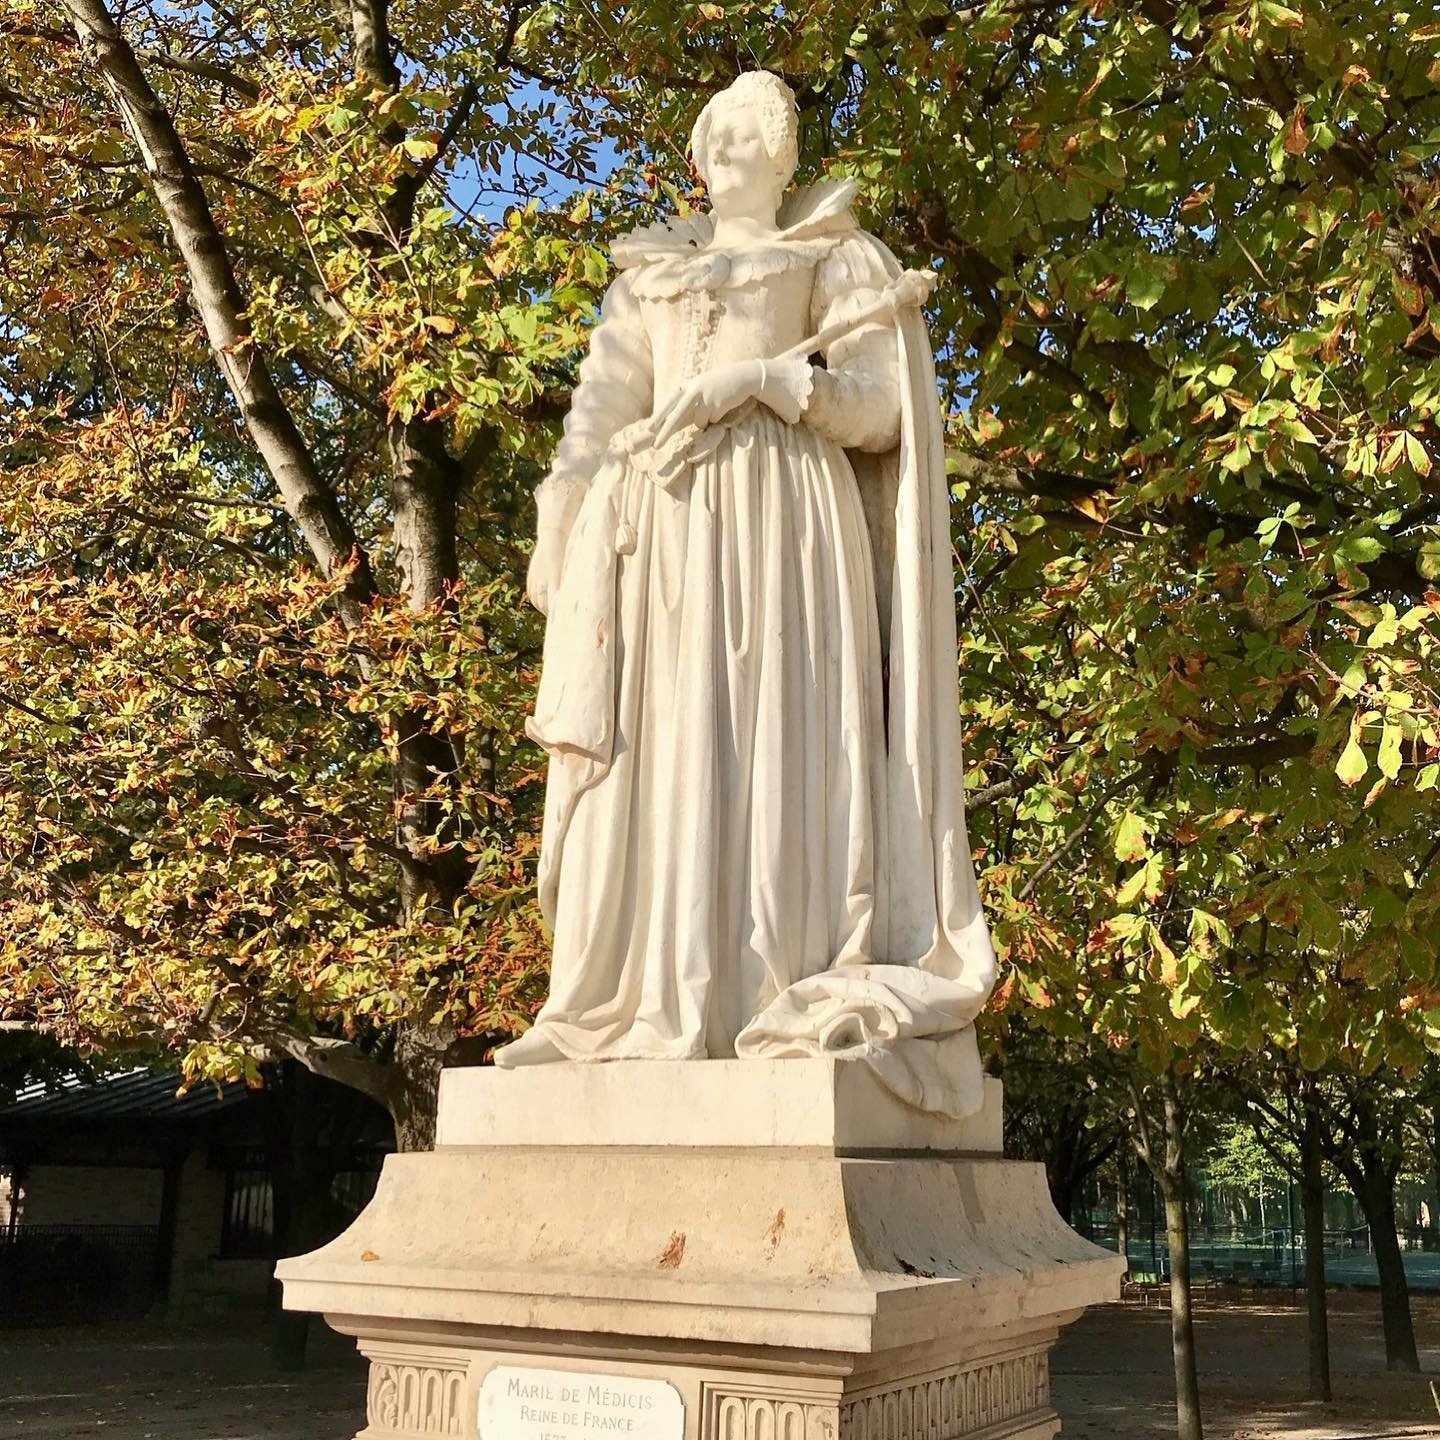 Marie-de-Medicis-Statue-Luxembourg-Gardens.jpg